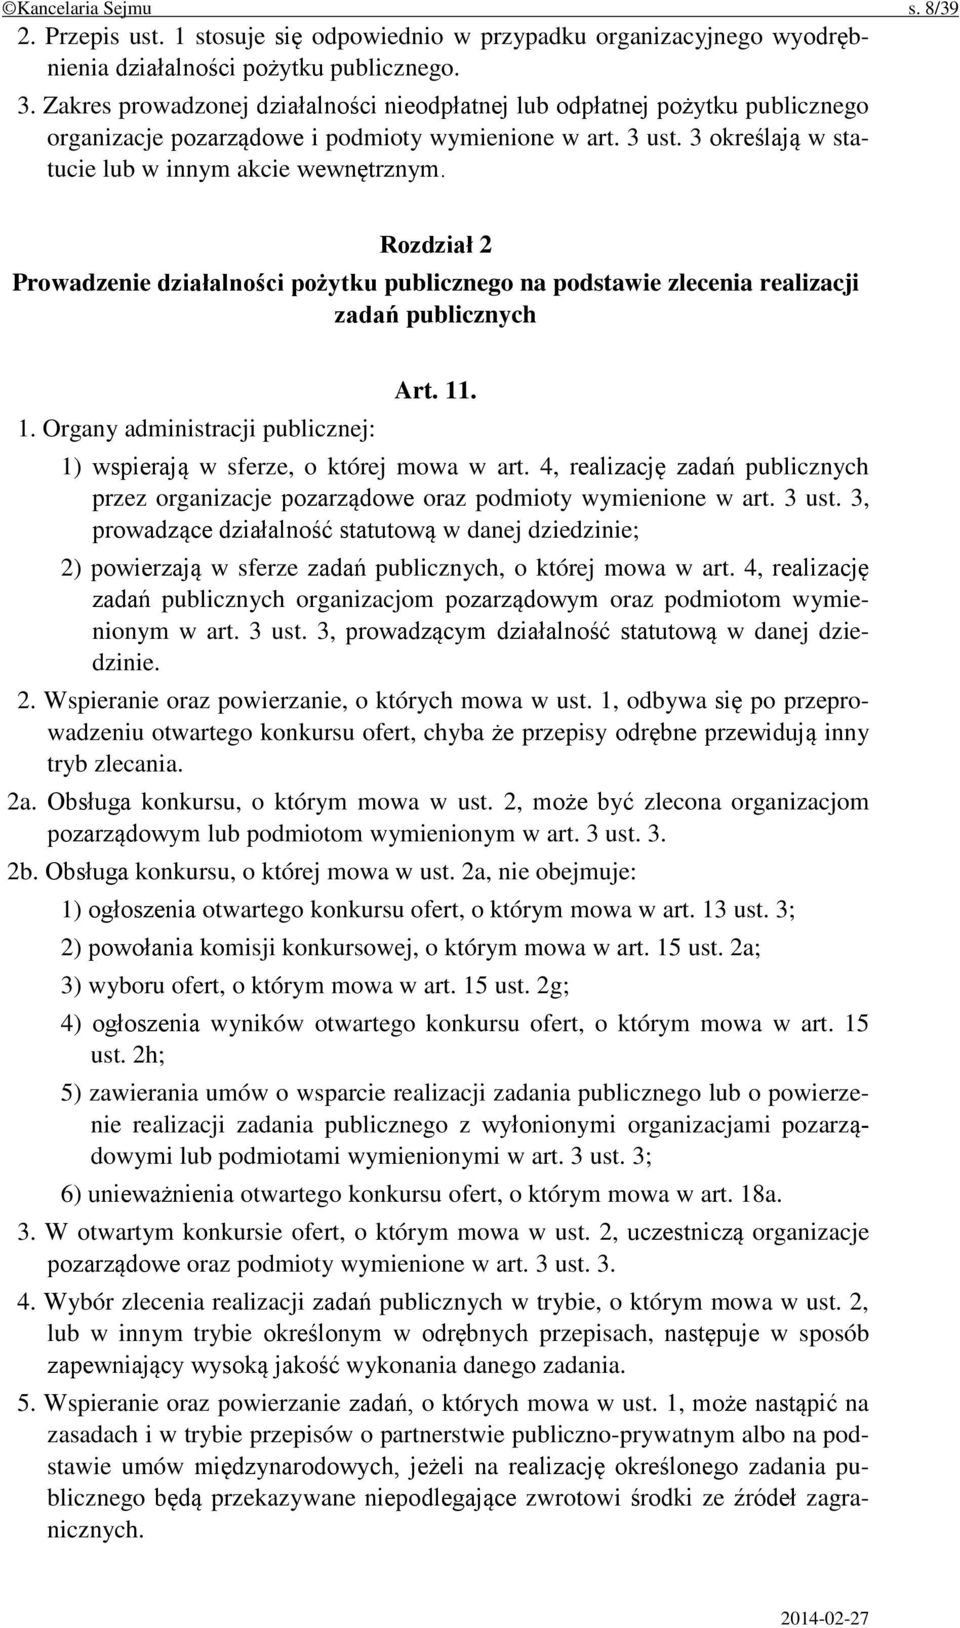 Rozdział 2 Prowadzenie działalności pożytku publicznego na podstawie zlecenia realizacji zadań publicznych 1. Organy administracji publicznej: Art. 11. 1) wspierają w sferze, o której mowa w art.